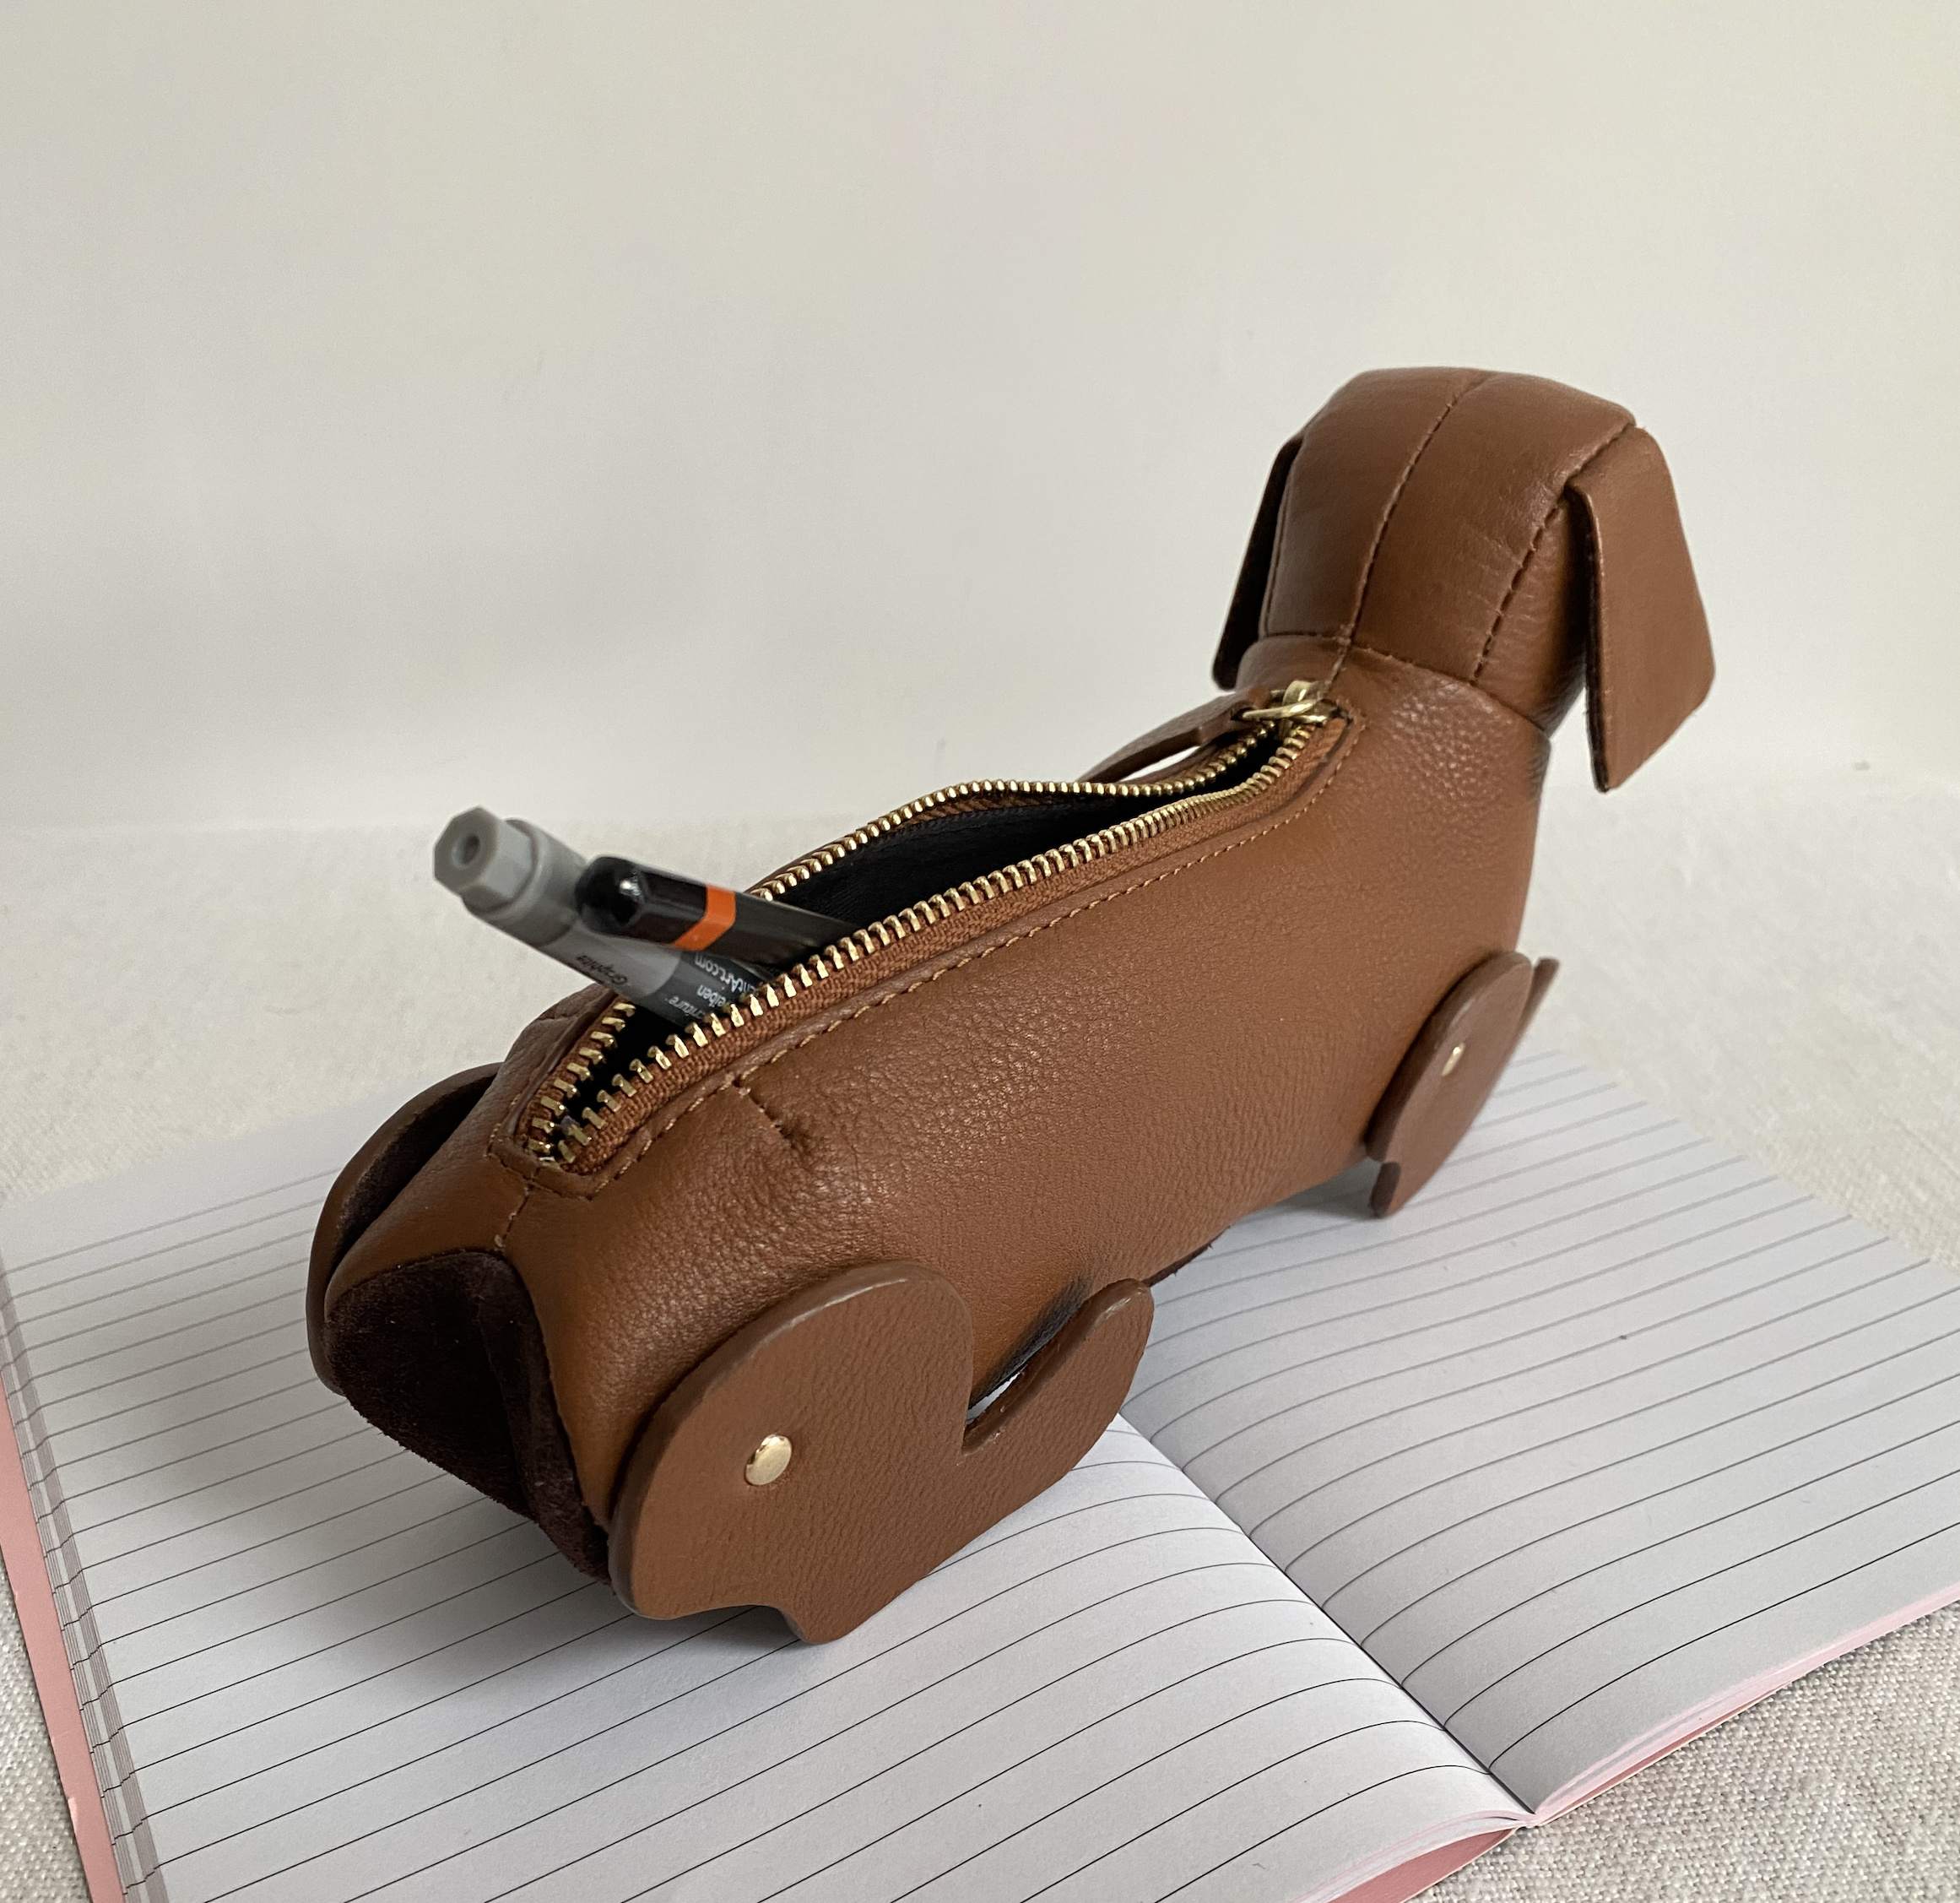 Sausage Dog Tan Leather Pencil Case